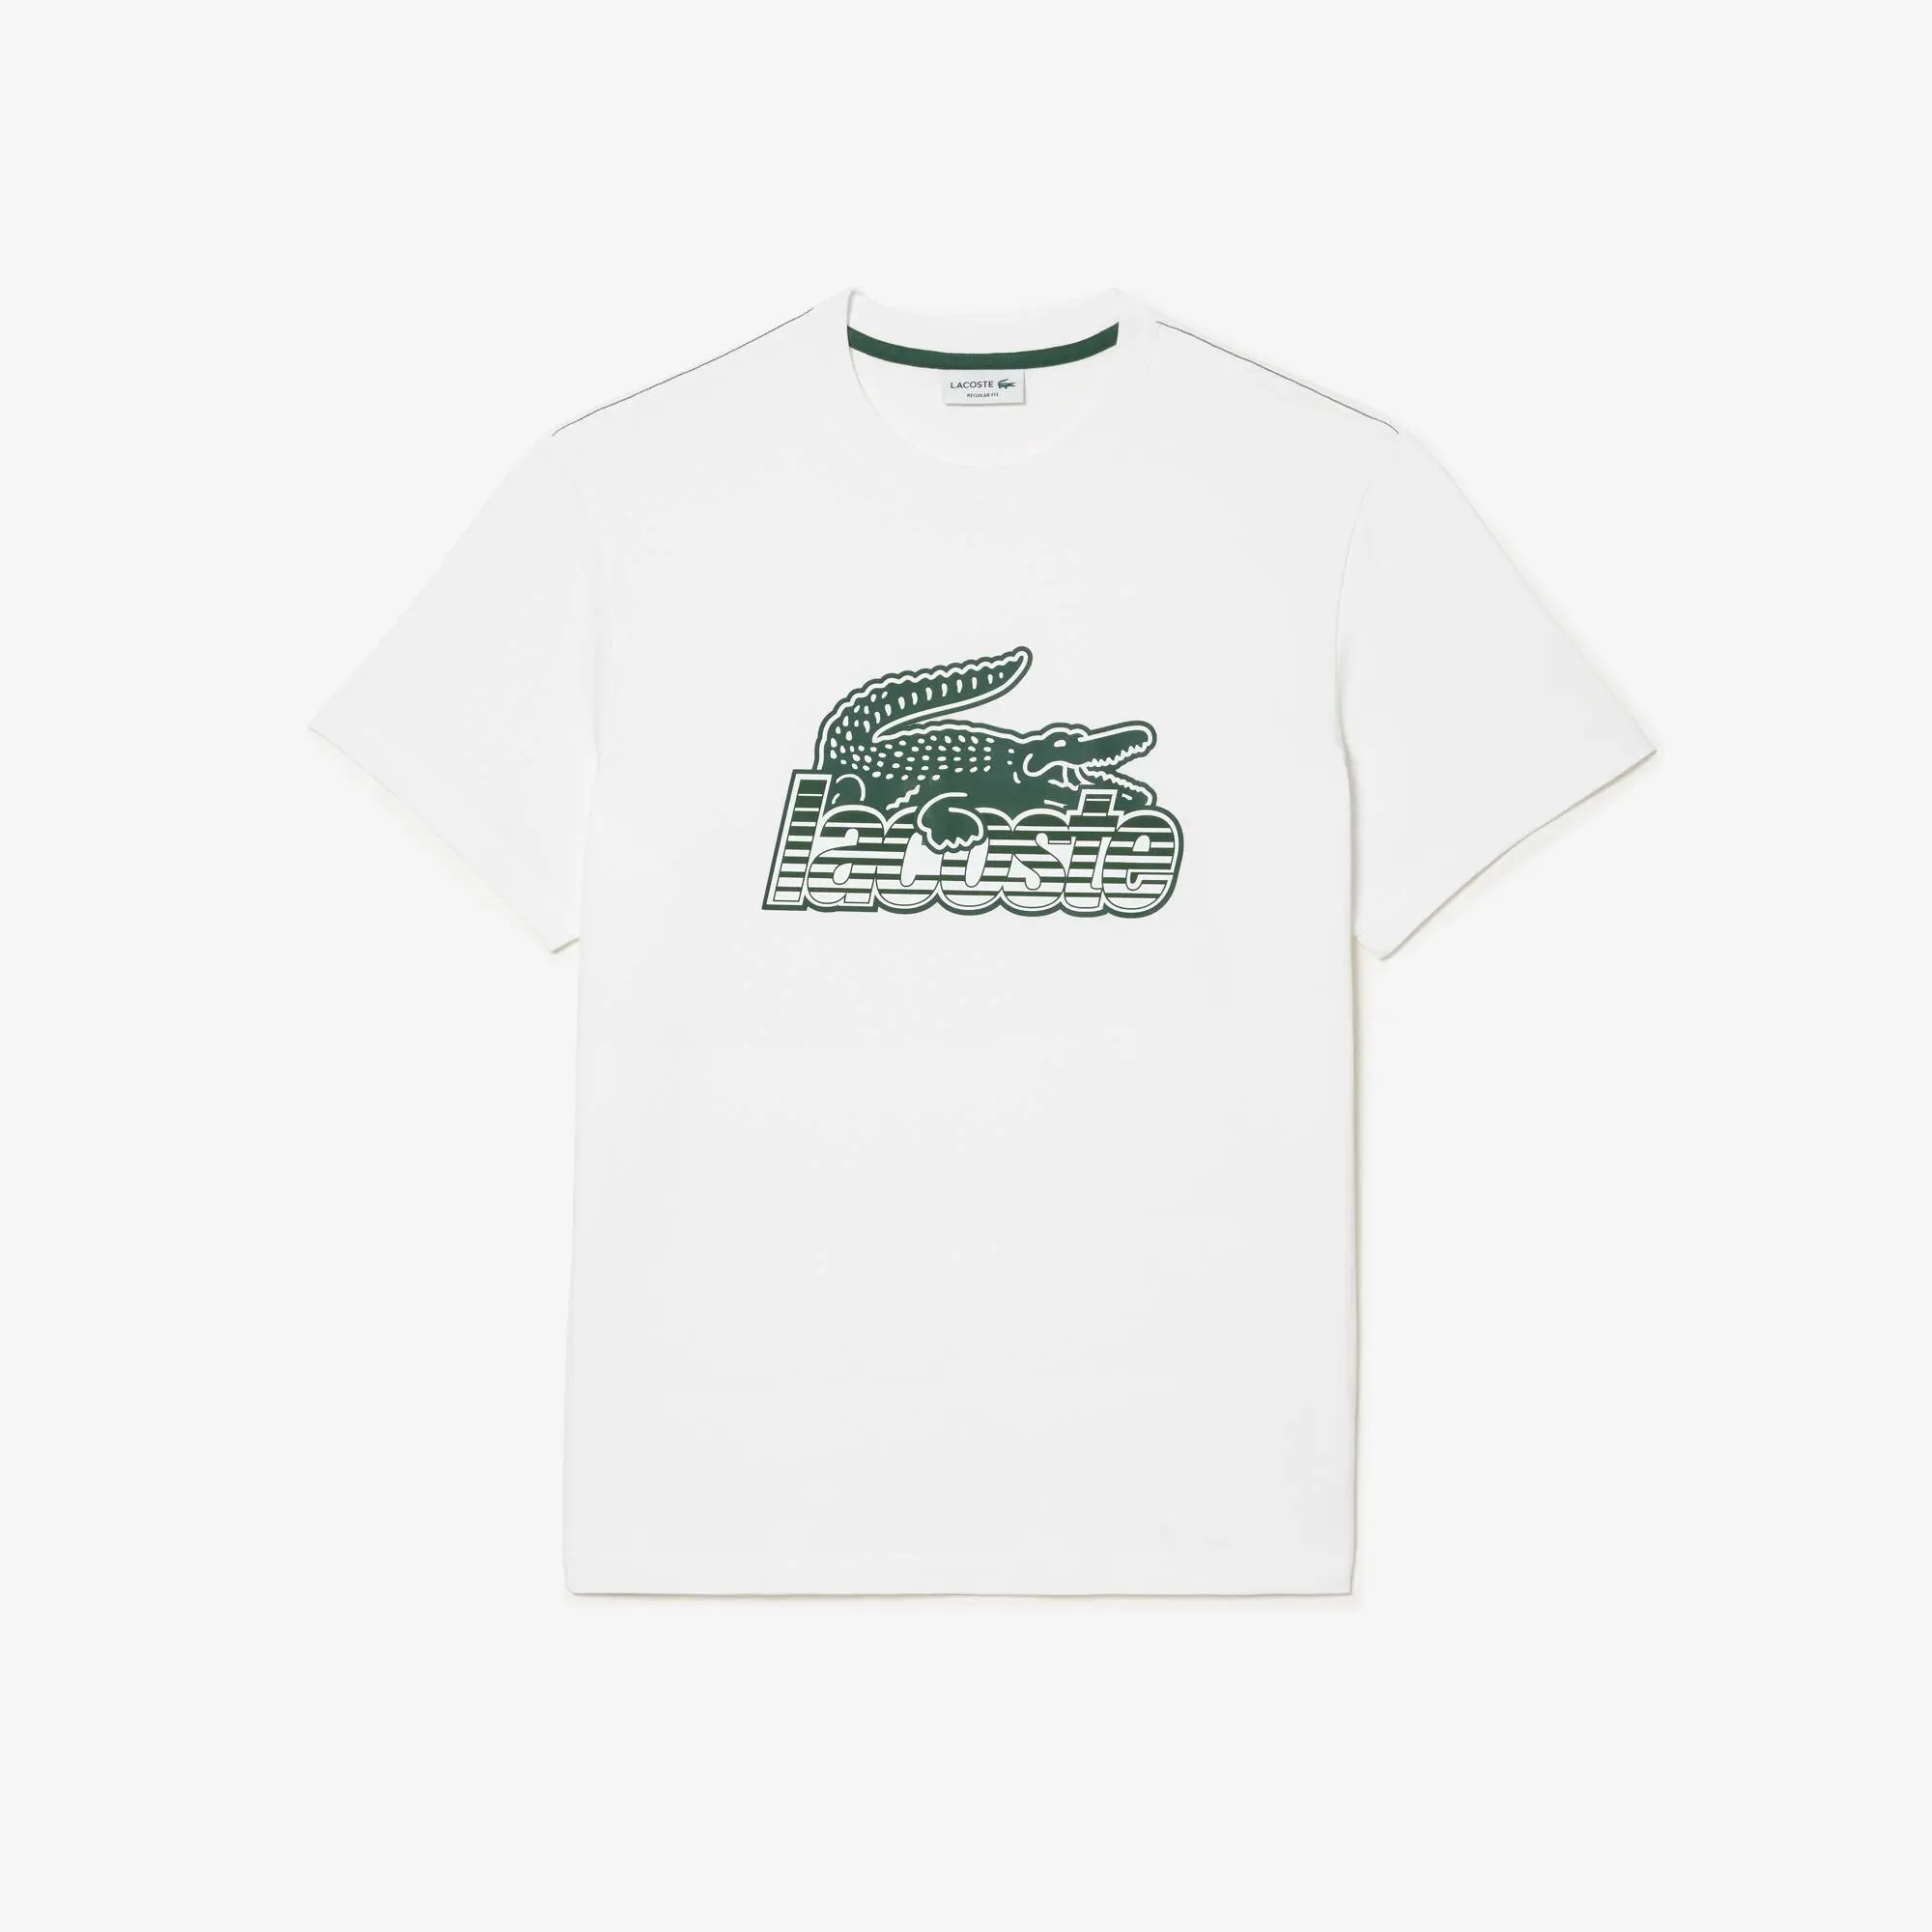 Lacoste Men’s Lacoste Cotton Jersey Print T-shirt. 2